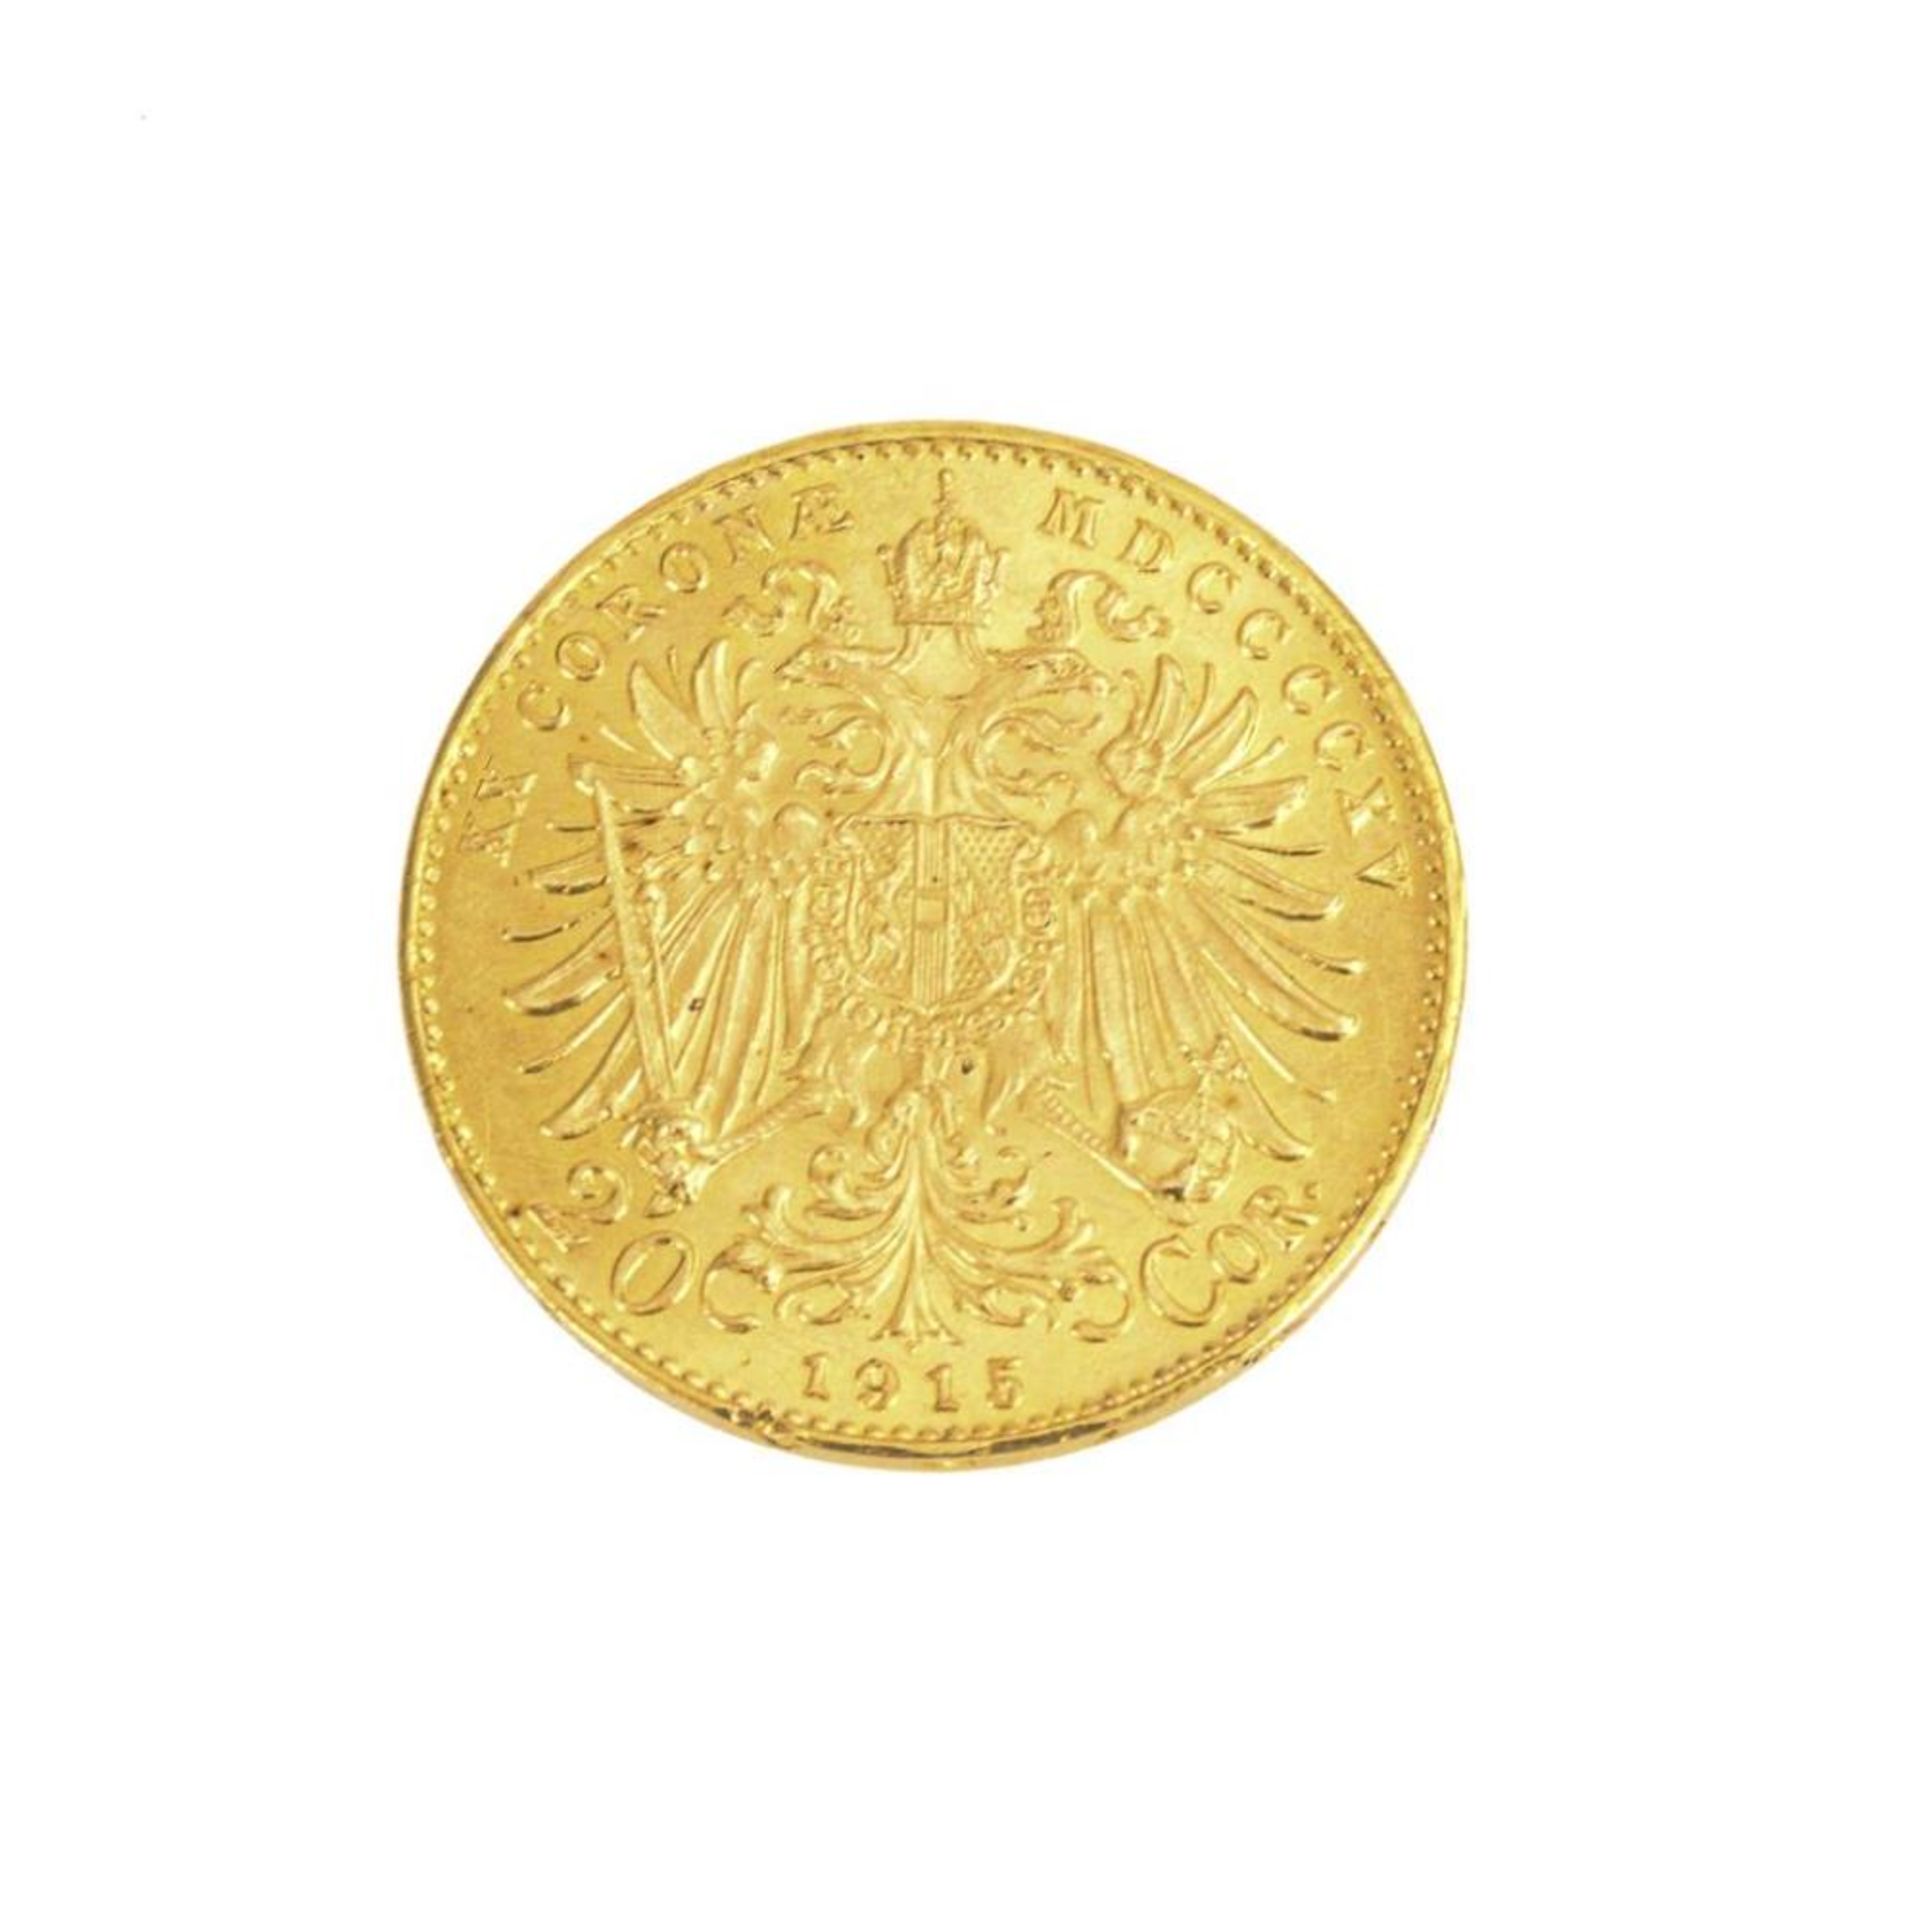 20 Corona, Österreich, 1915. - Bild 2 aus 2